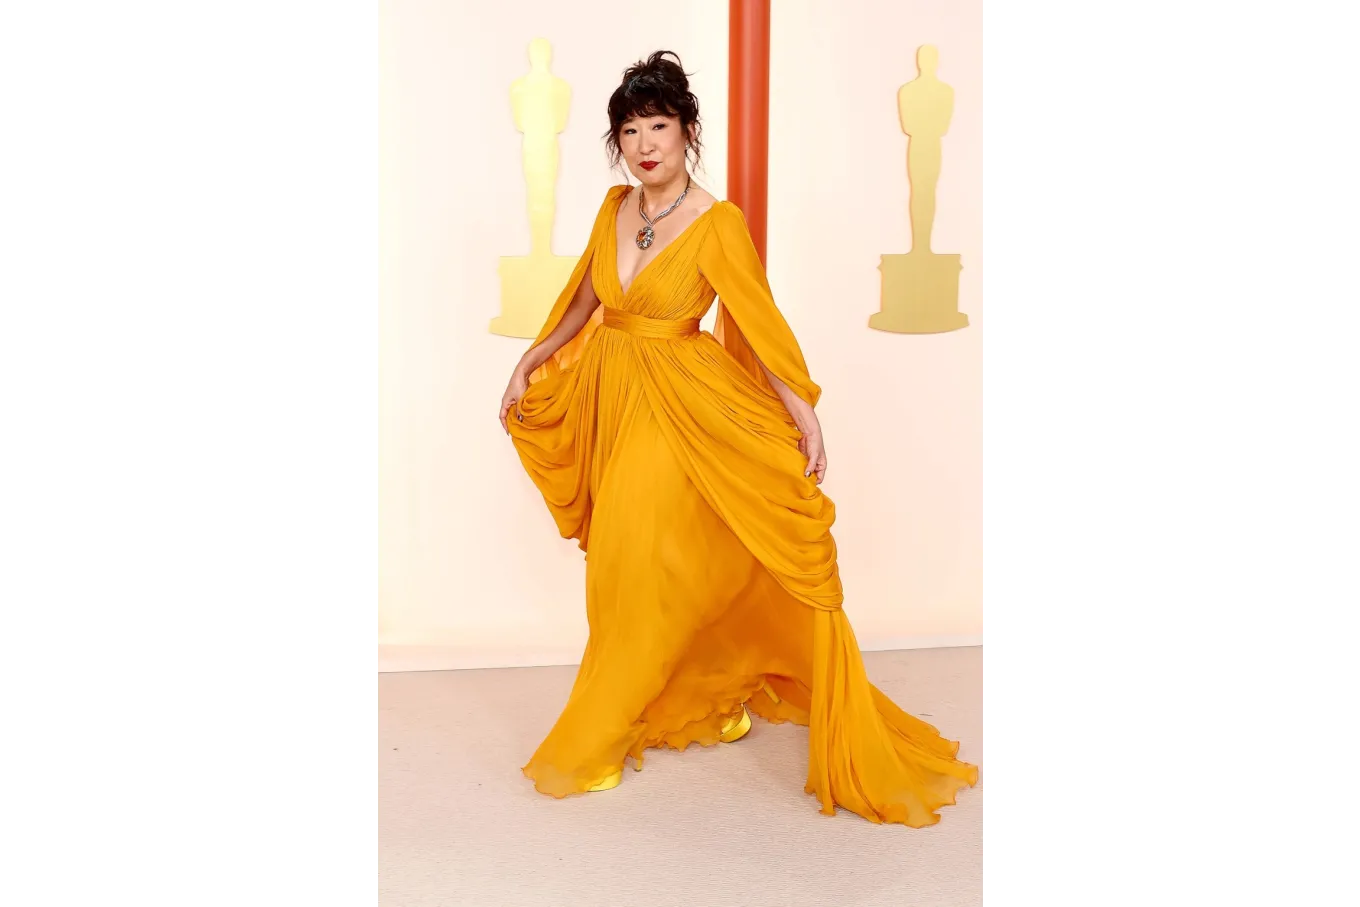 actress Sandra Oh wearing a mustard-colored chiffon dress